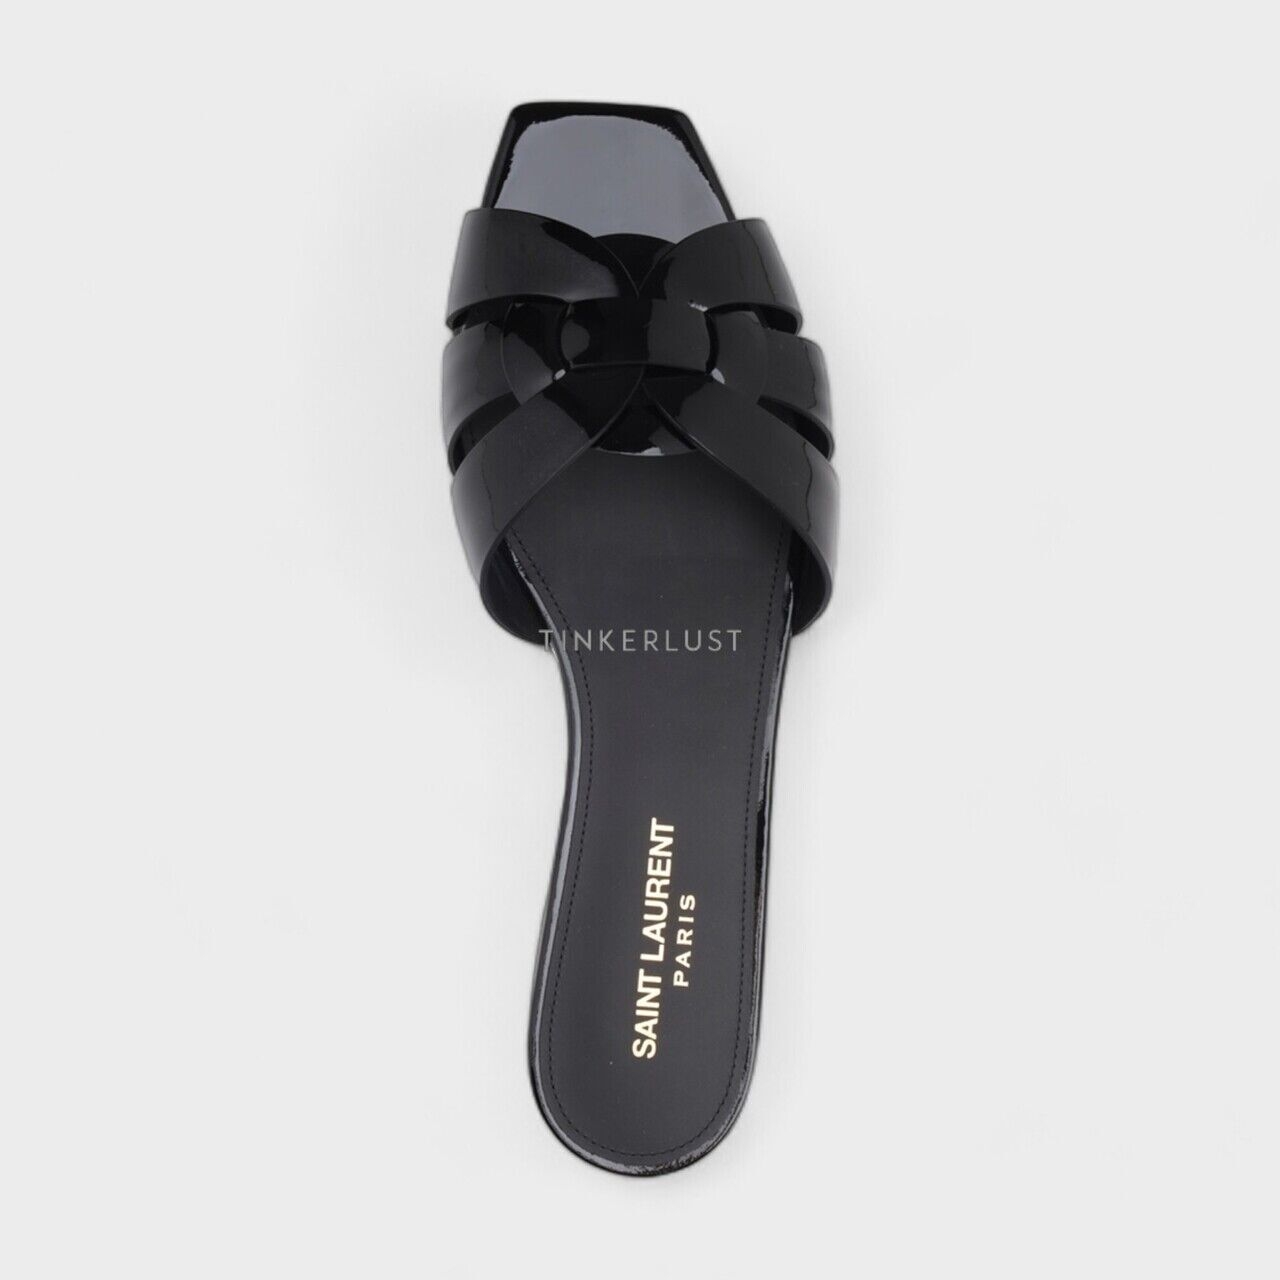 Saint Laurent Nu Pieds Tribute Slippers Black Patent Sandals